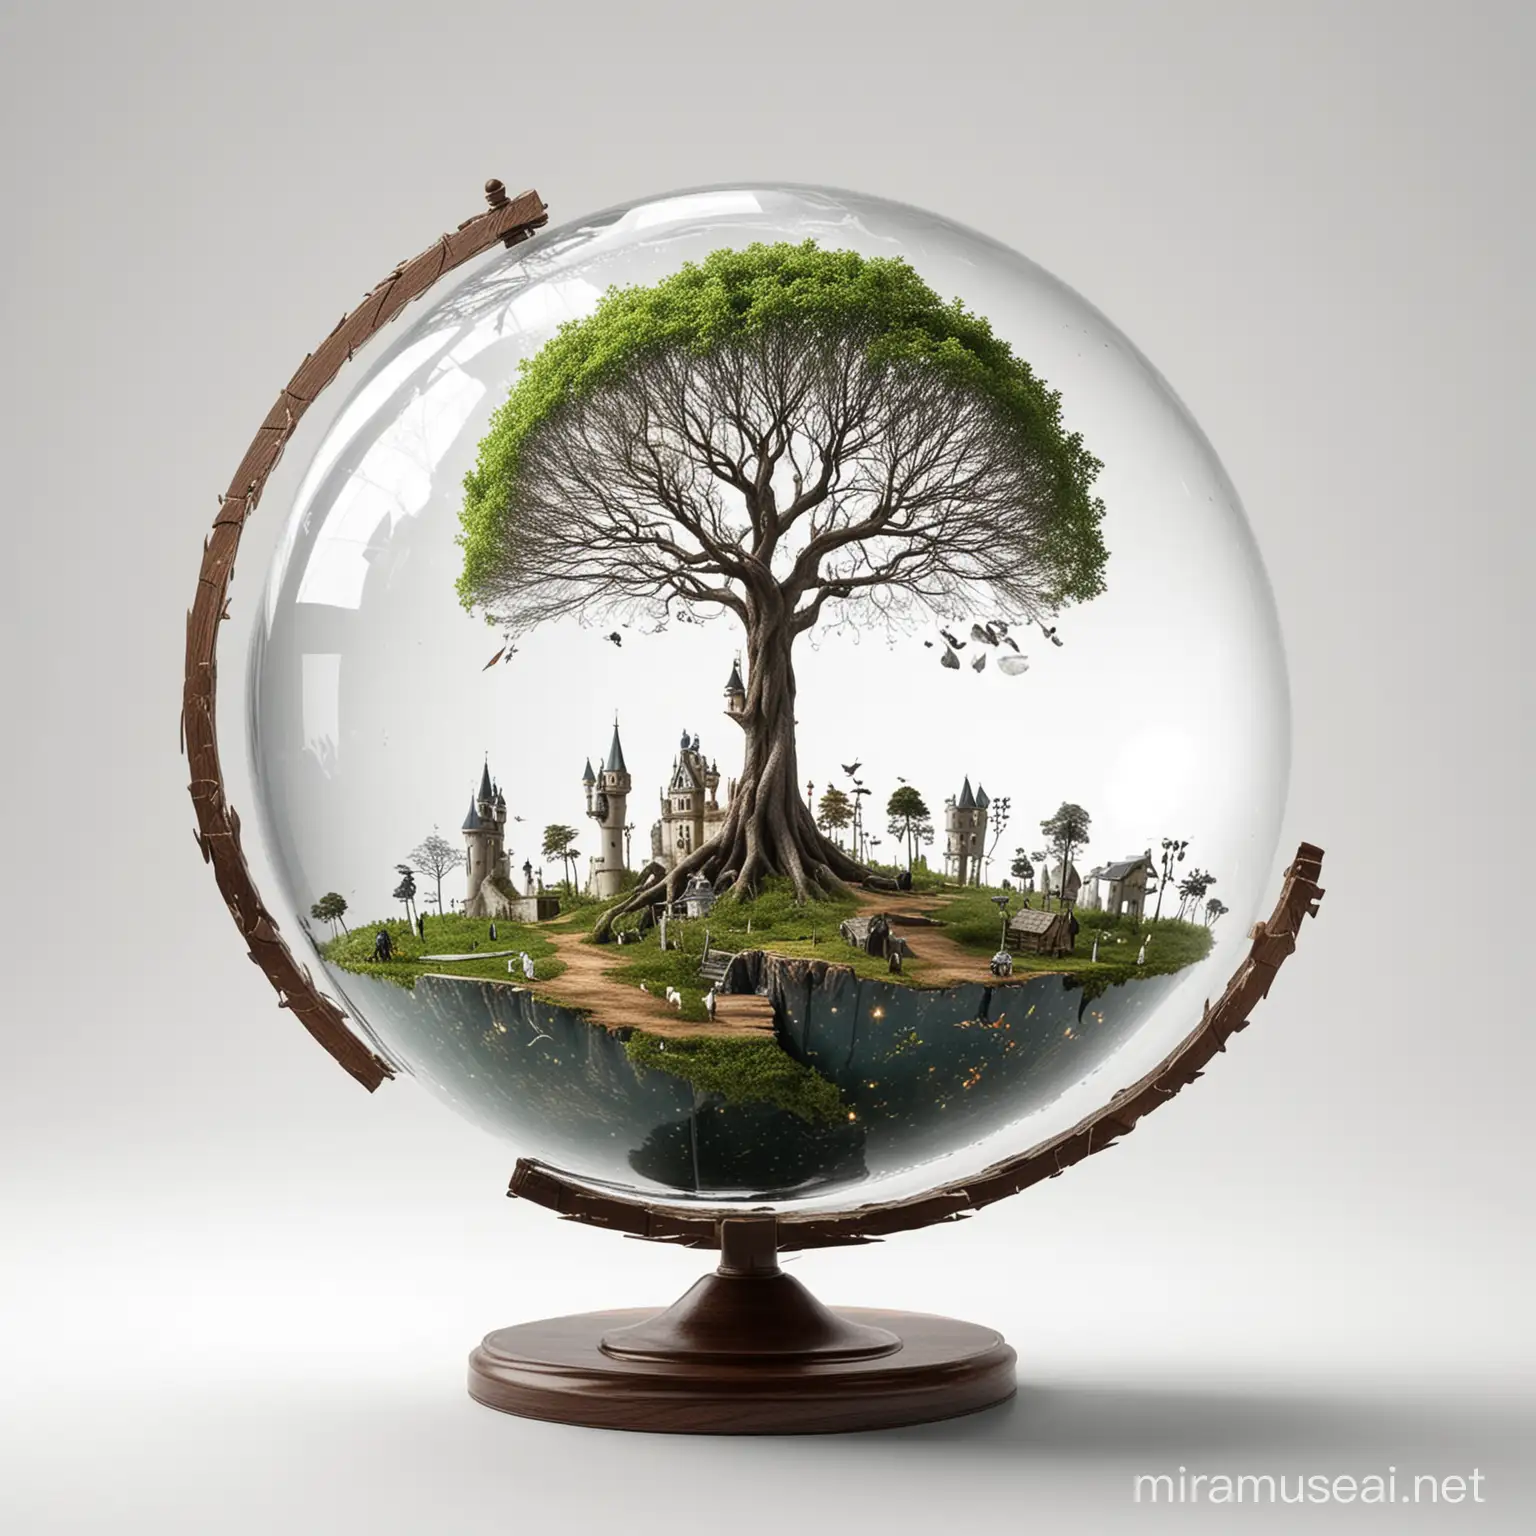 abstrakcyjny obraz przedstawia globus. Reprezentuje koncepcję baśni i światów fantasy, dostarczając poczucia zdumienia i wyobraźni. Białe tło 